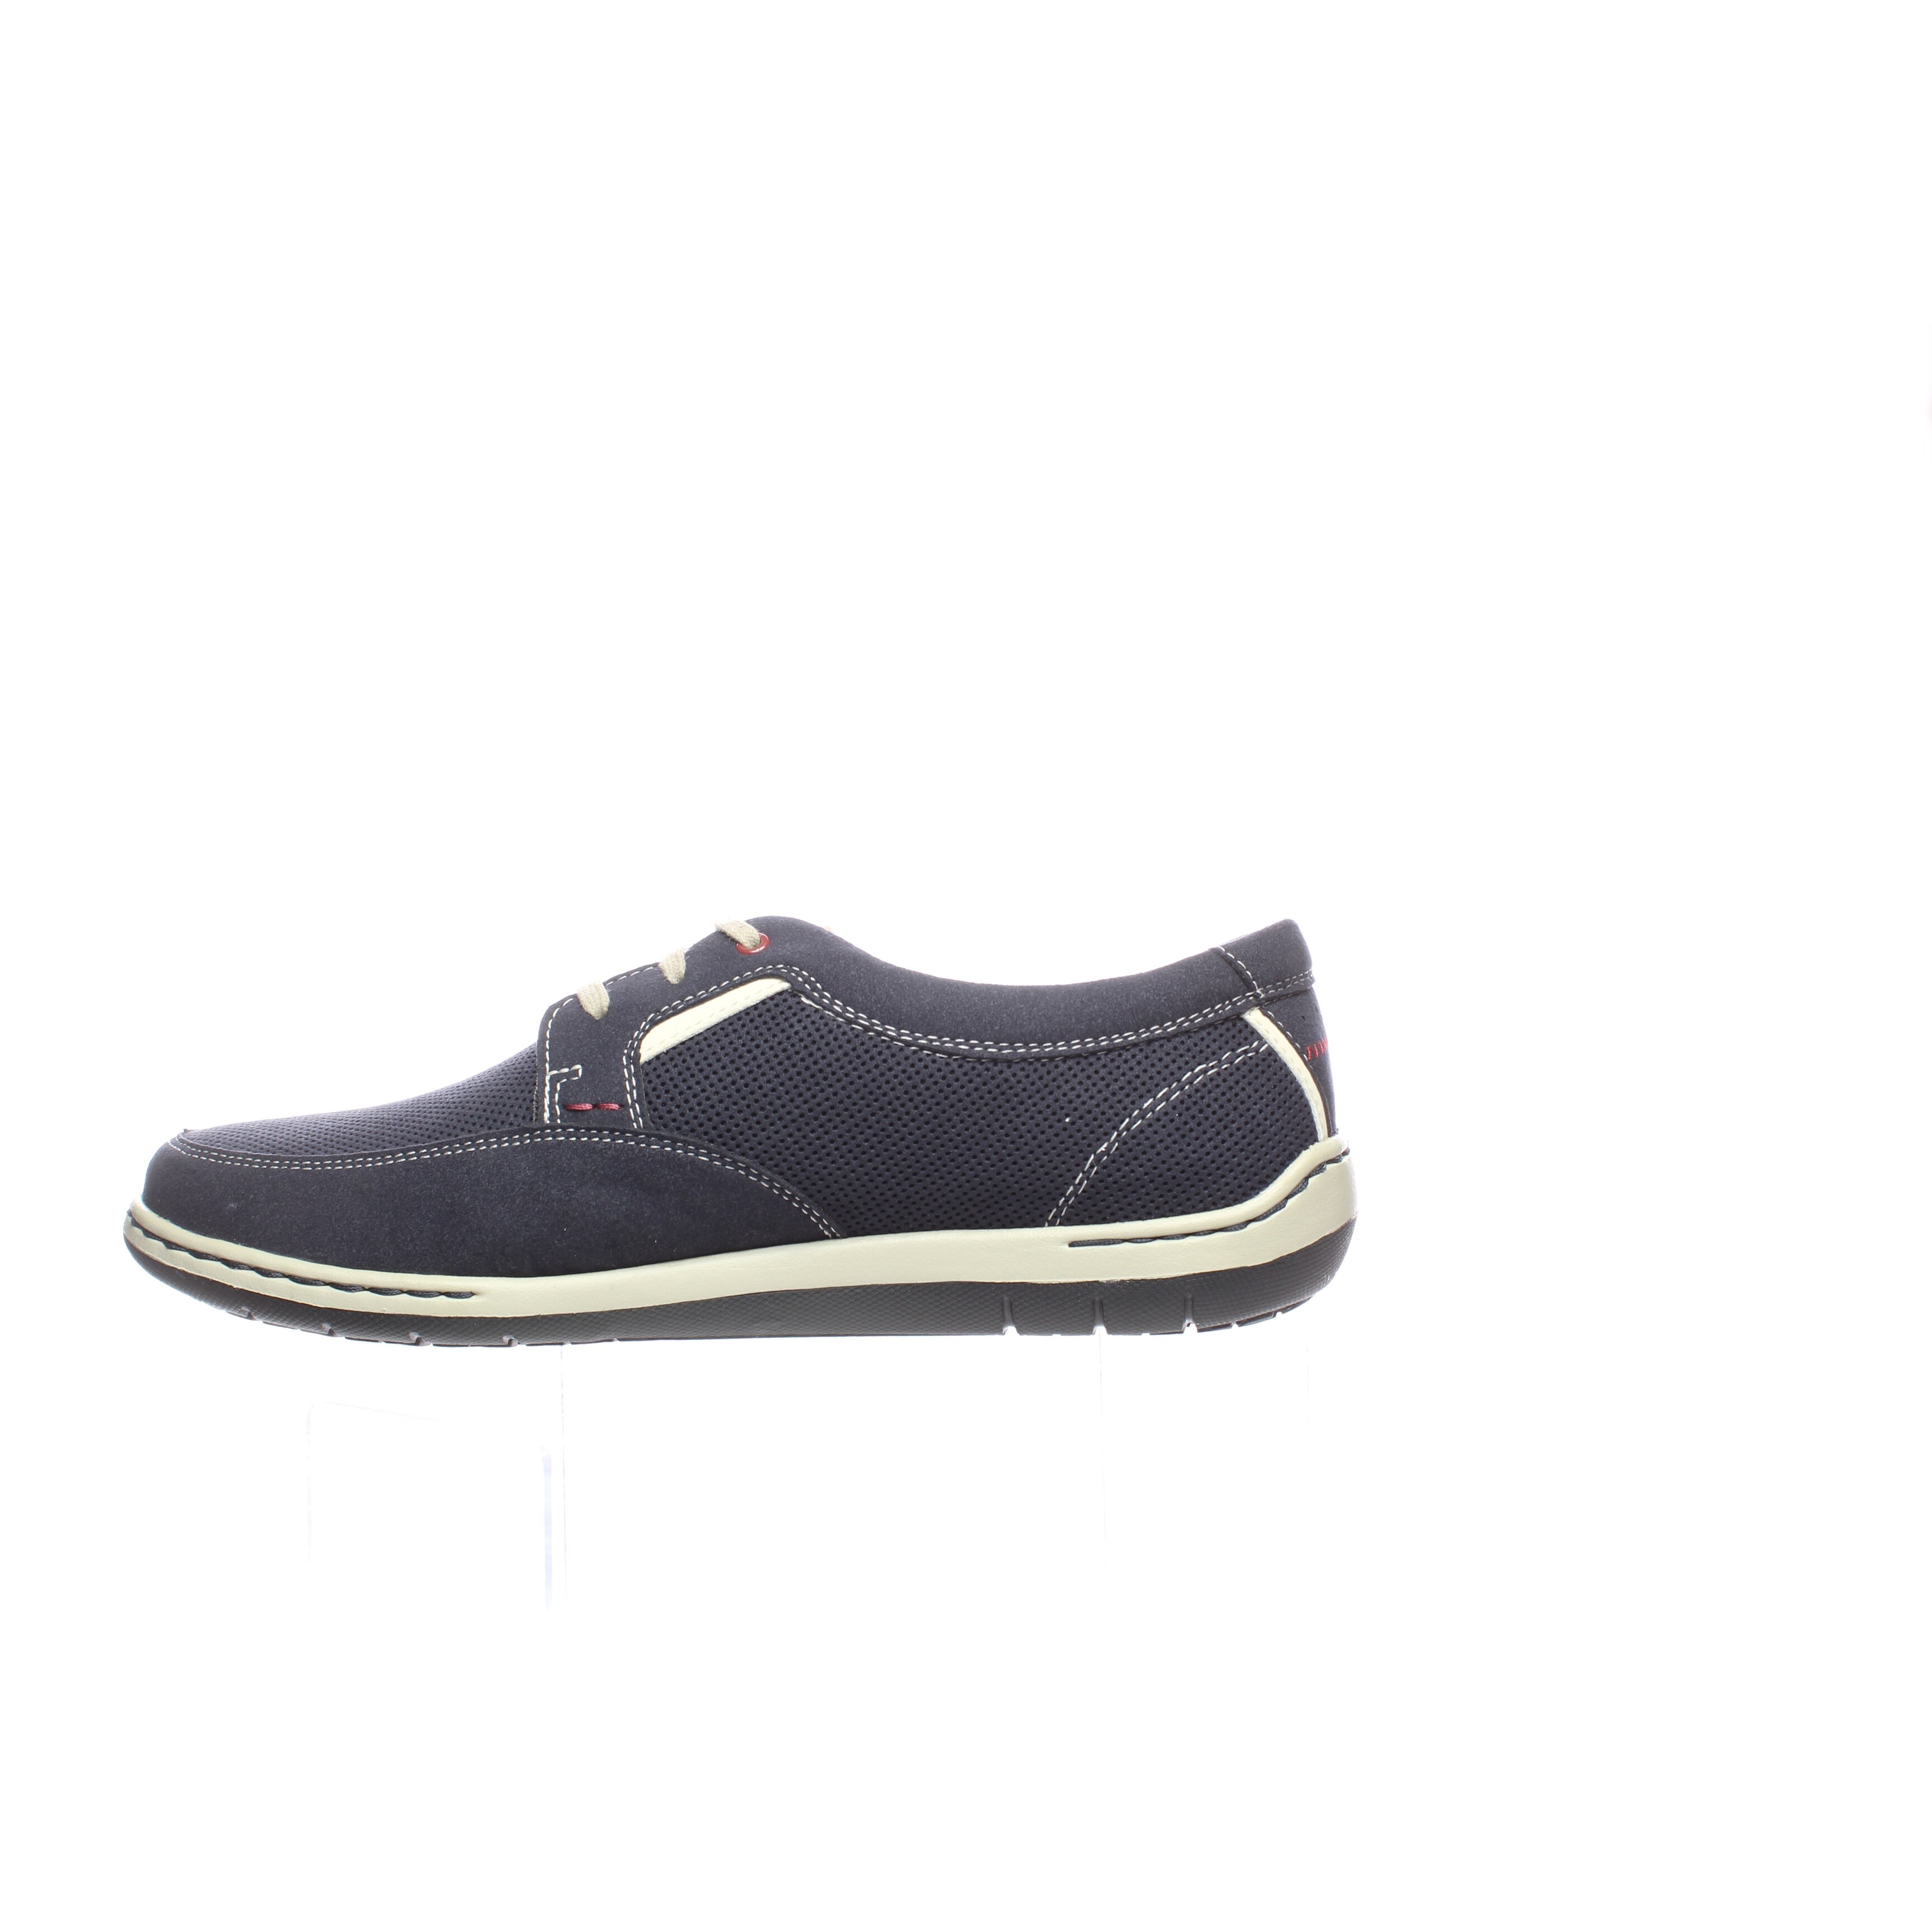 Dunham Mens Fitswift Navy Oxford Dress Shoe Size 8 4E